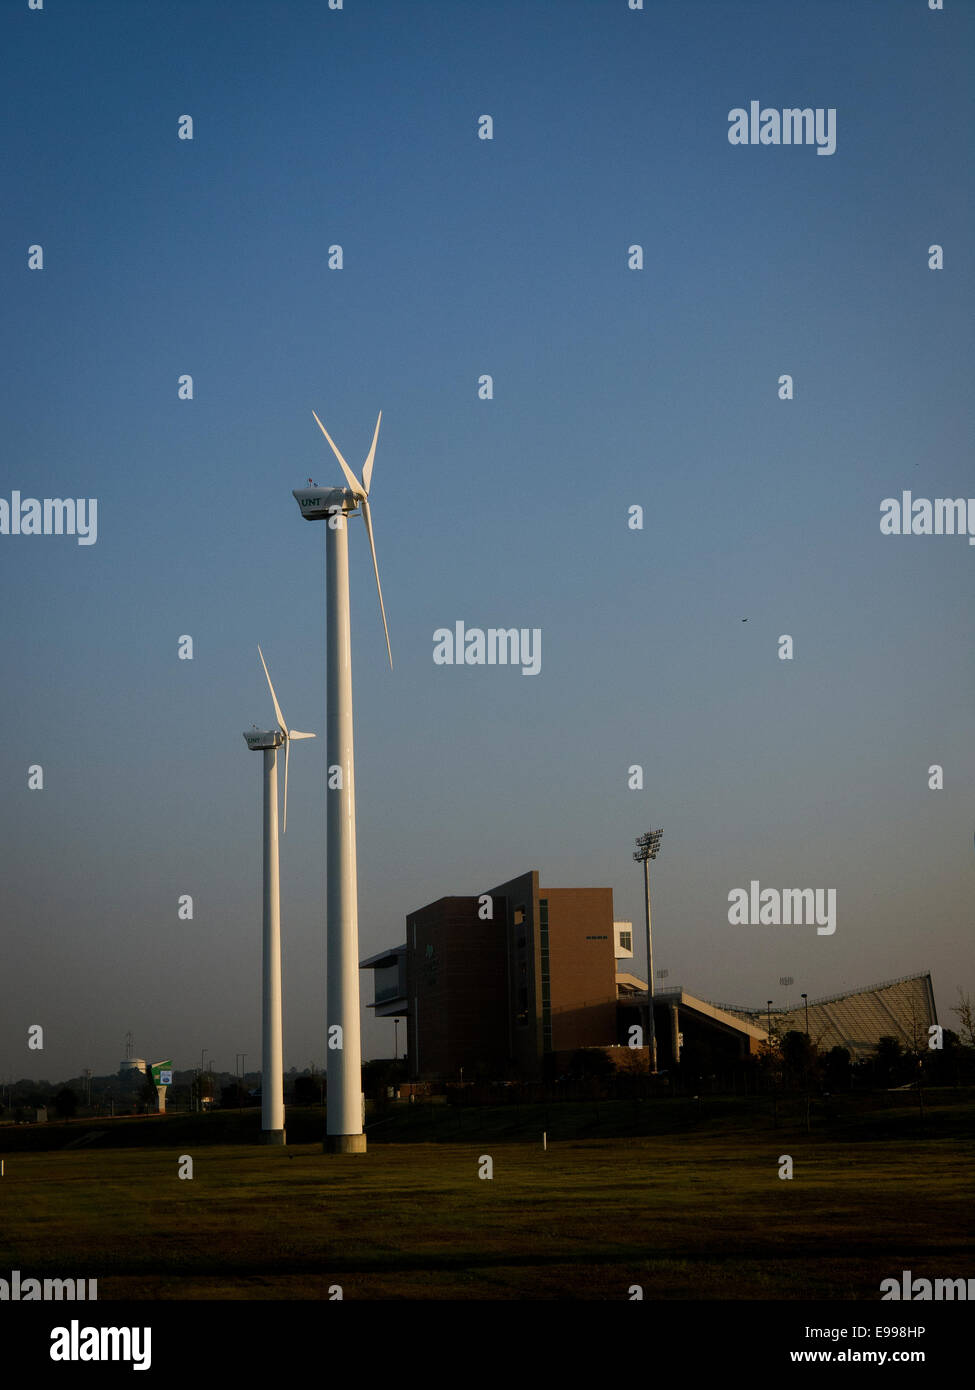 Texas, USA. 22 octobre, 2014. Éoliennes production d'énergie renouvelable pour l'université de North Texas à Denton, où ils votent pour l'interdiction de forage de gaz et de pétrole. Crédit : J. G. Domke/Alamy Live News Banque D'Images